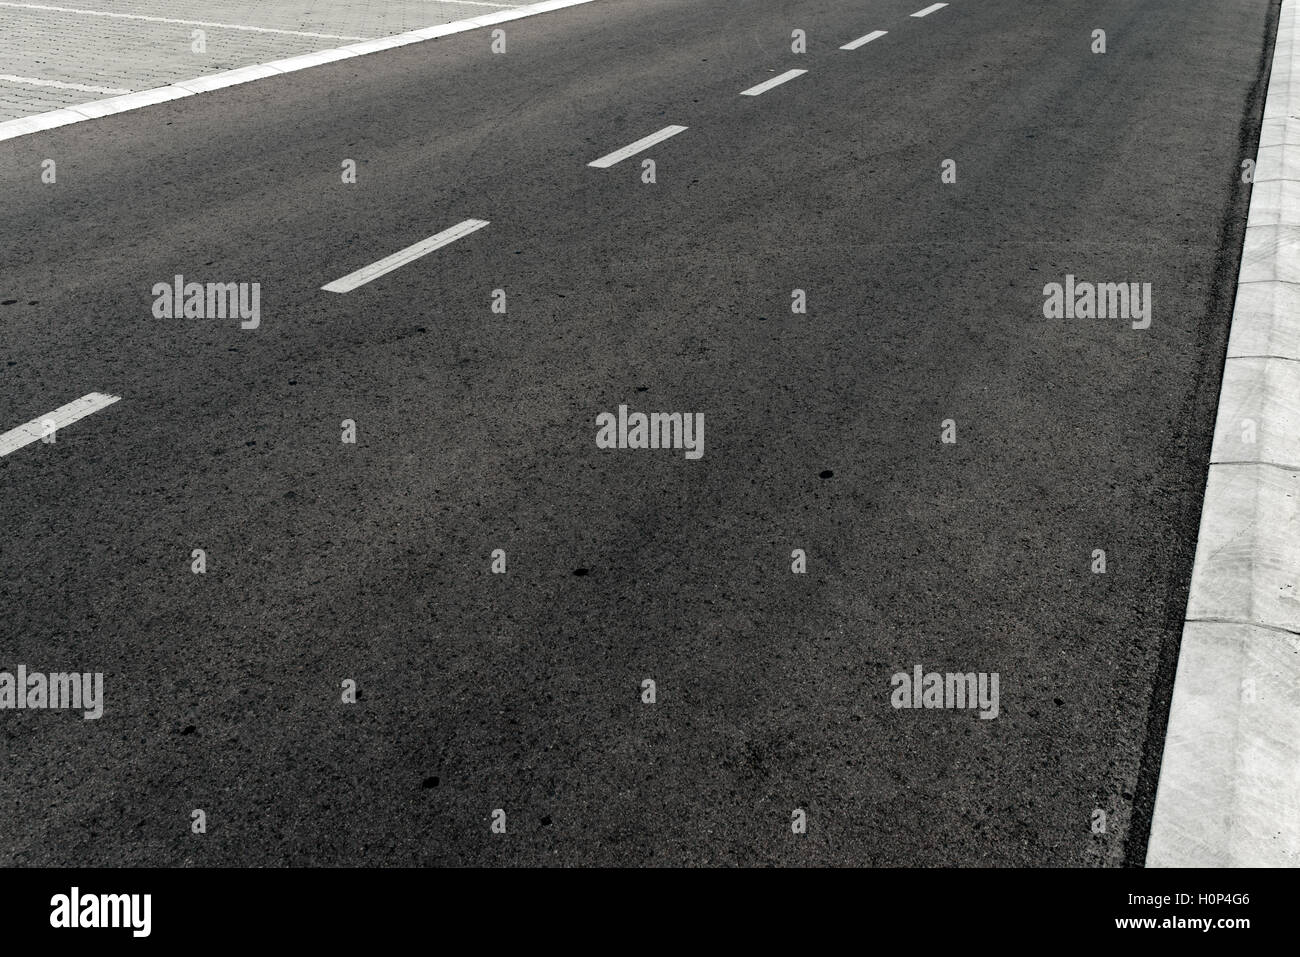 Svuotare le due corsie strada asfaltata autostrada vanishing in prospettiva Foto Stock